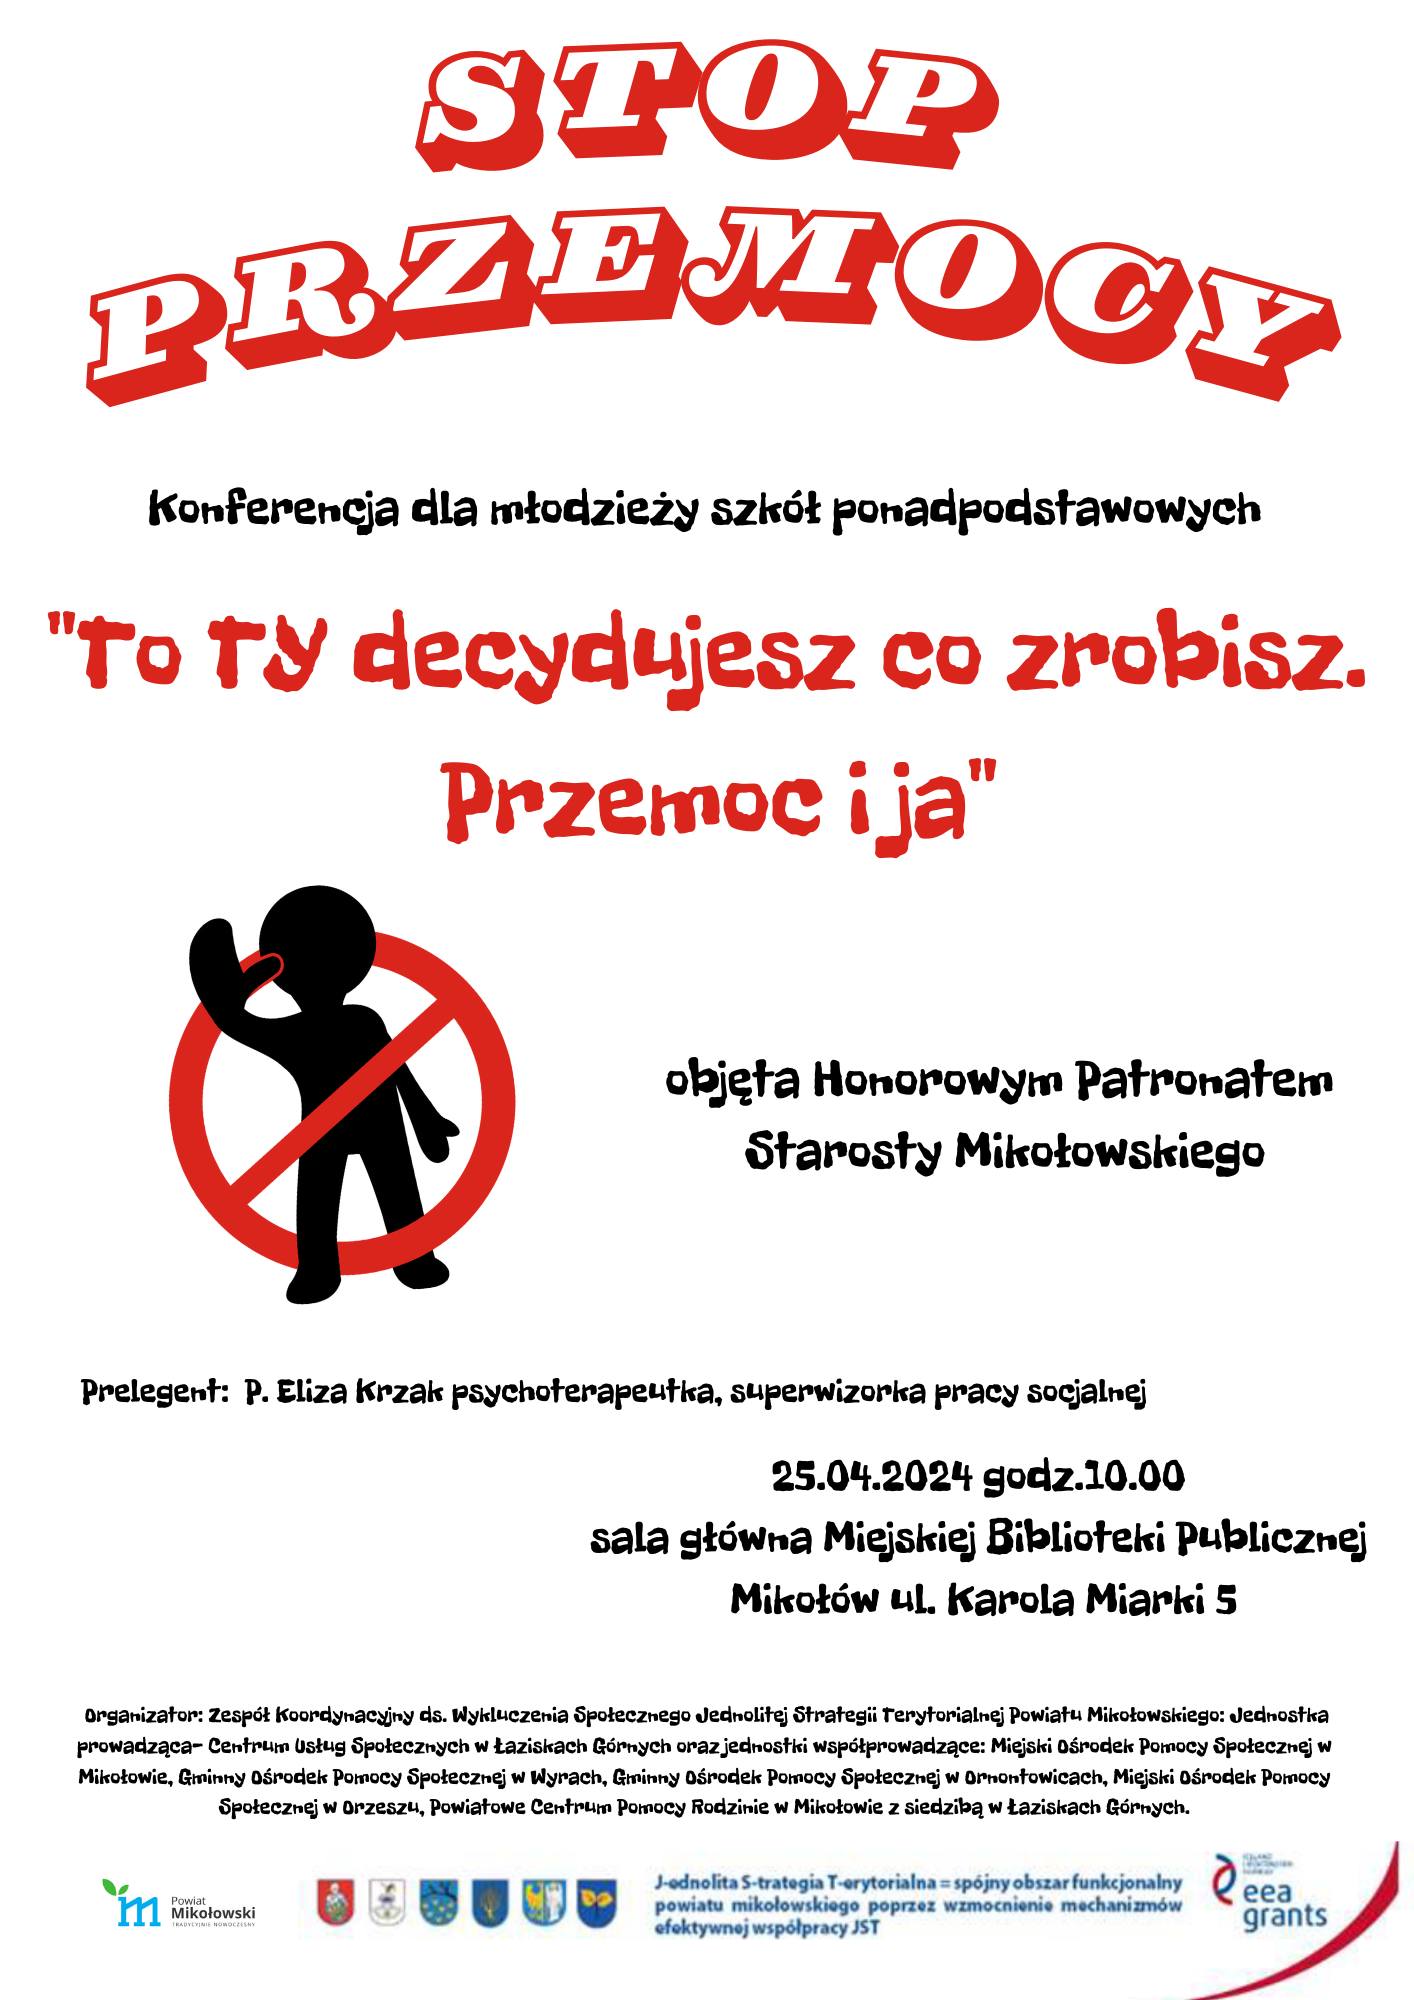 Plakat informacyjny konferencji dla młodzieży szkół ponadpodstawowych na temat przemocy